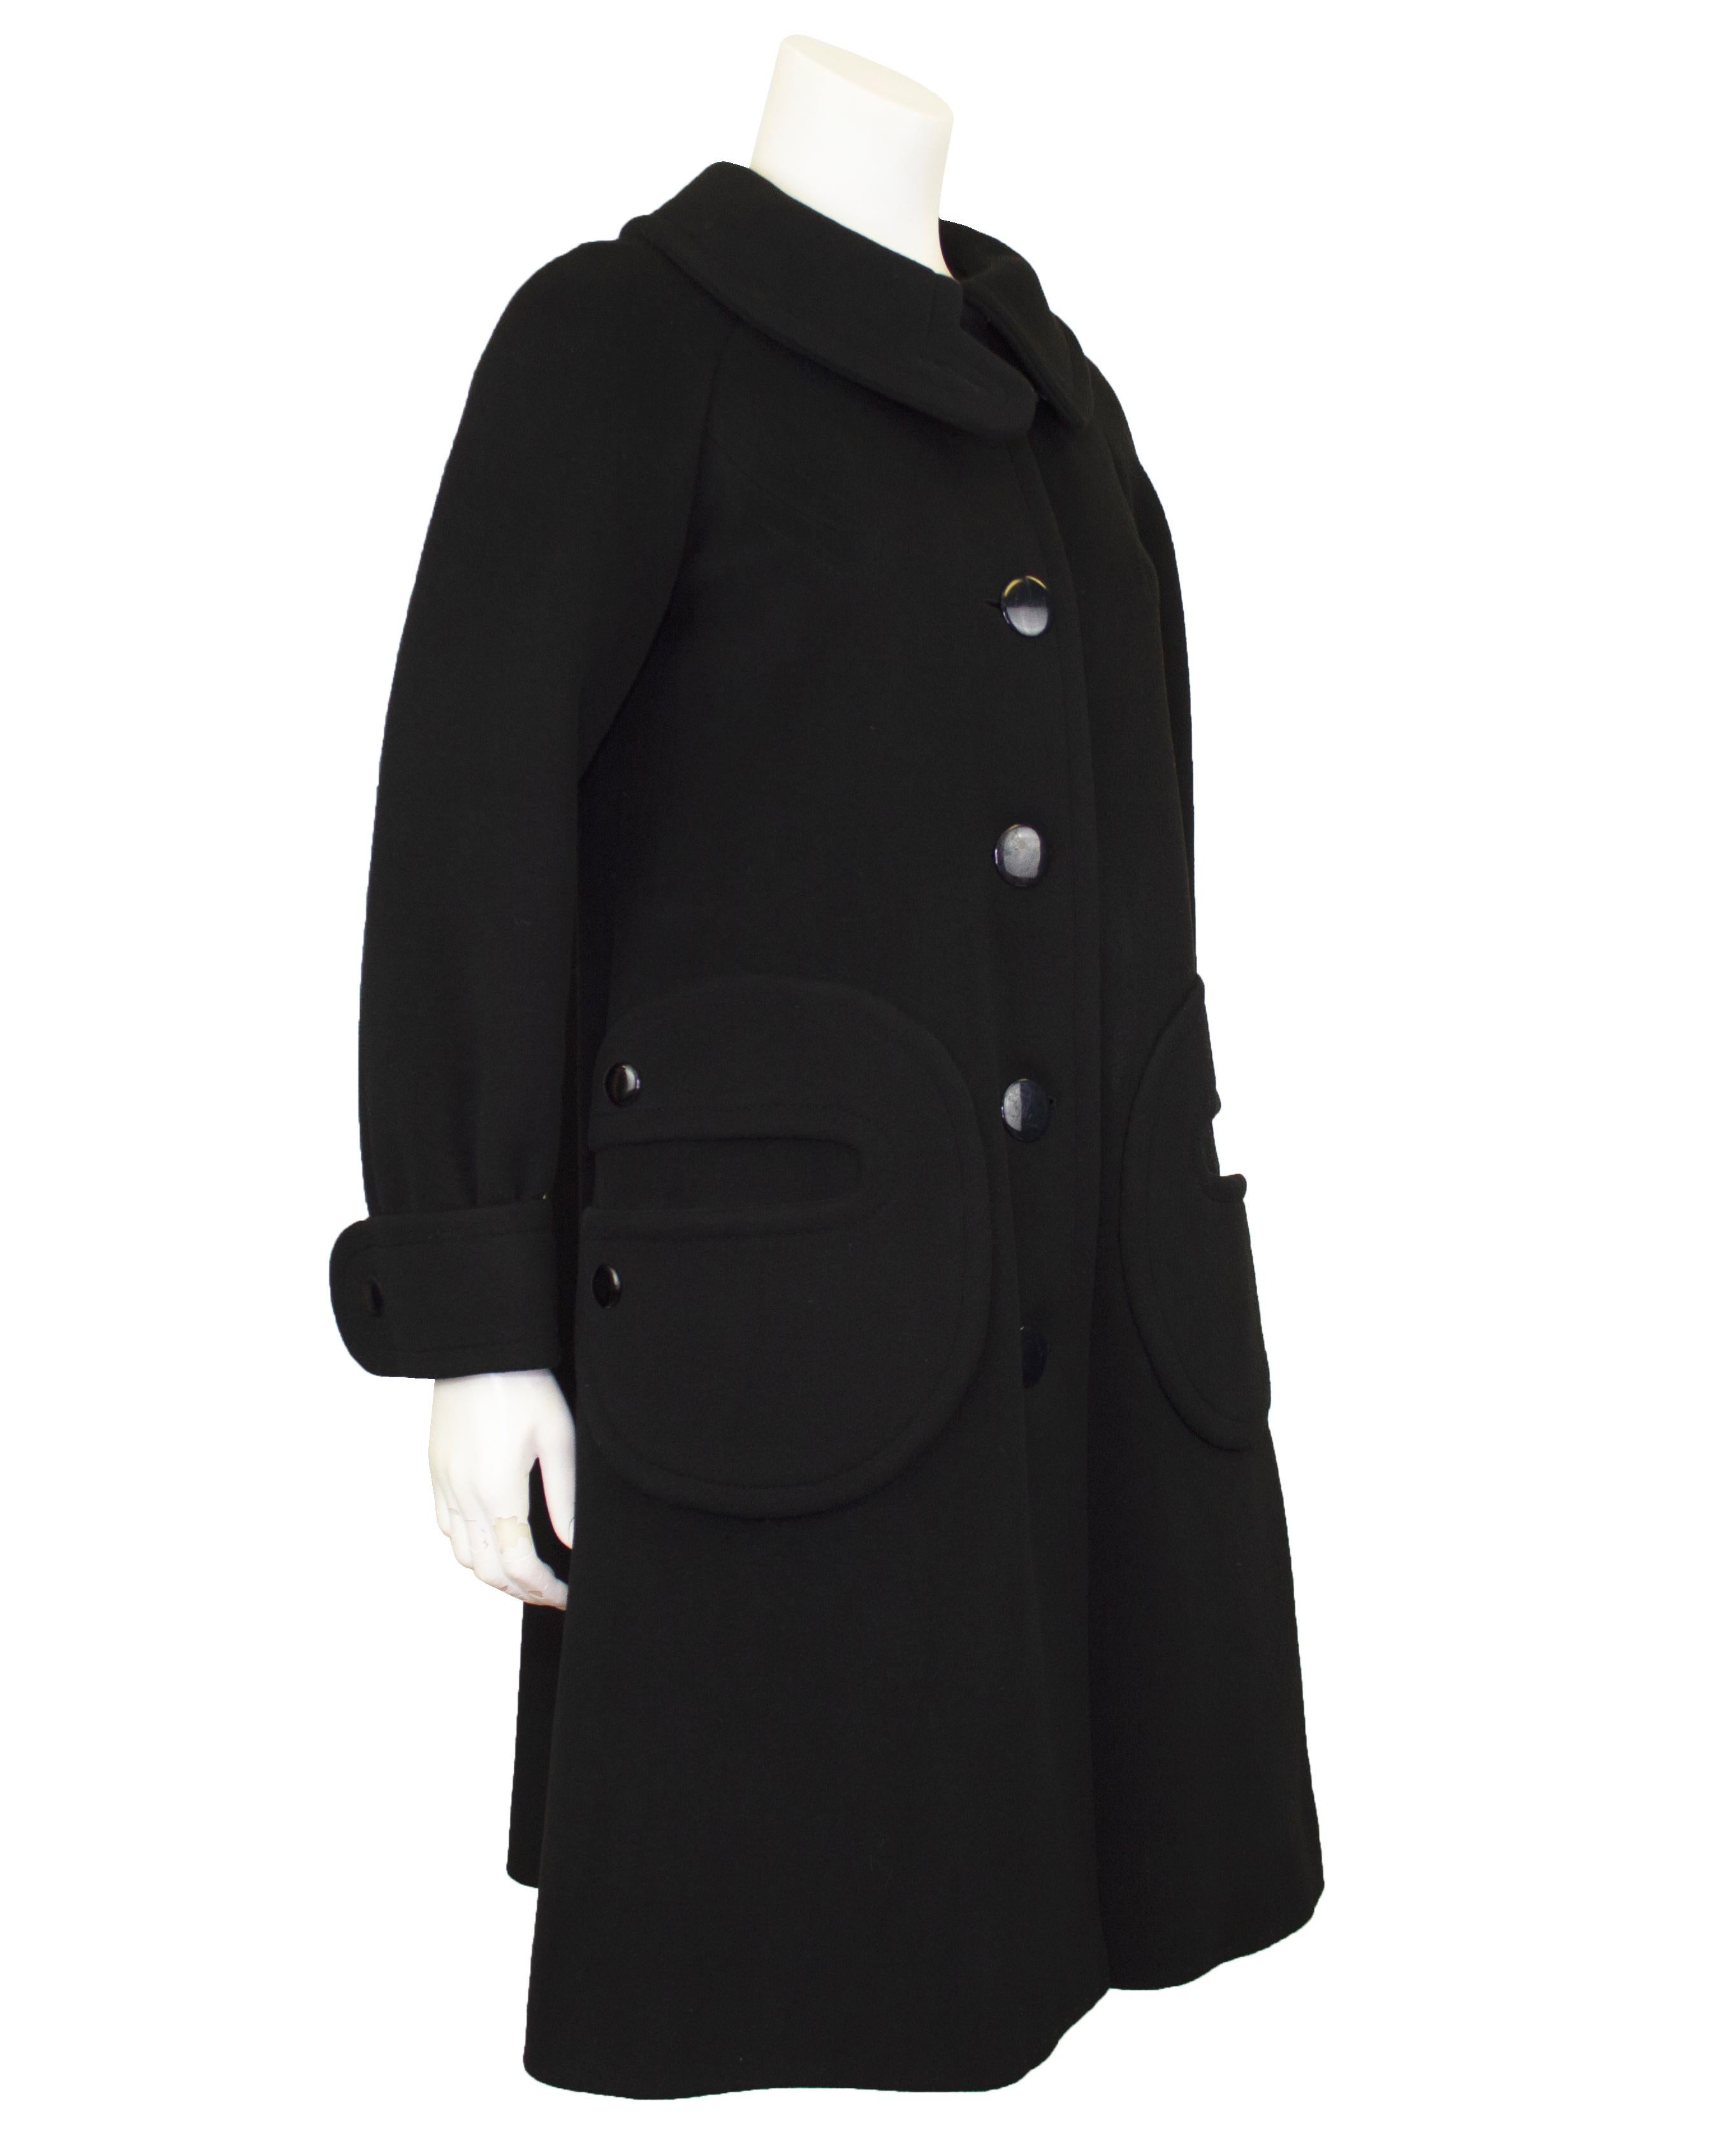 Ce manteau de laine noire Pierre Cardin des années 1960 est une pièce emblématique de la mode de l'époque. Elle illustre l'approche avant-gardiste de Cardin en matière de design et sa vision novatrice de la mode futuriste. Fabriqué en laine noire de